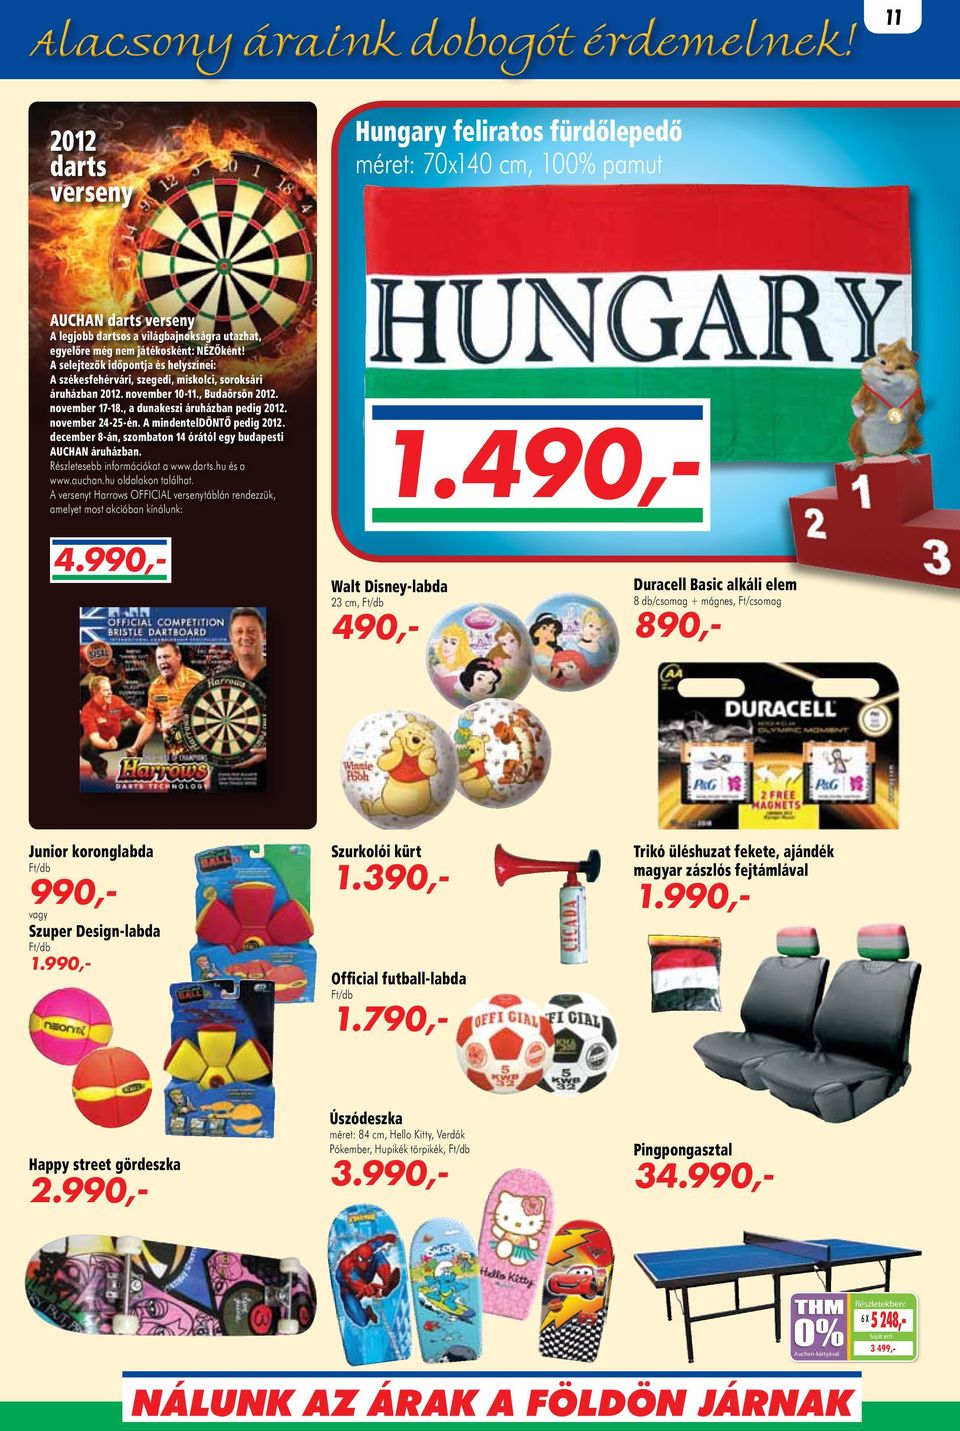 november 24-25-én. A mindenteldöntő pedig 2012. december 8-án, szombaton 14 órától egy budapesti AUCHAN áruházban. Részletesebb információkat a www.darts.hu és a www.auchan.hu oldalakon találhat.